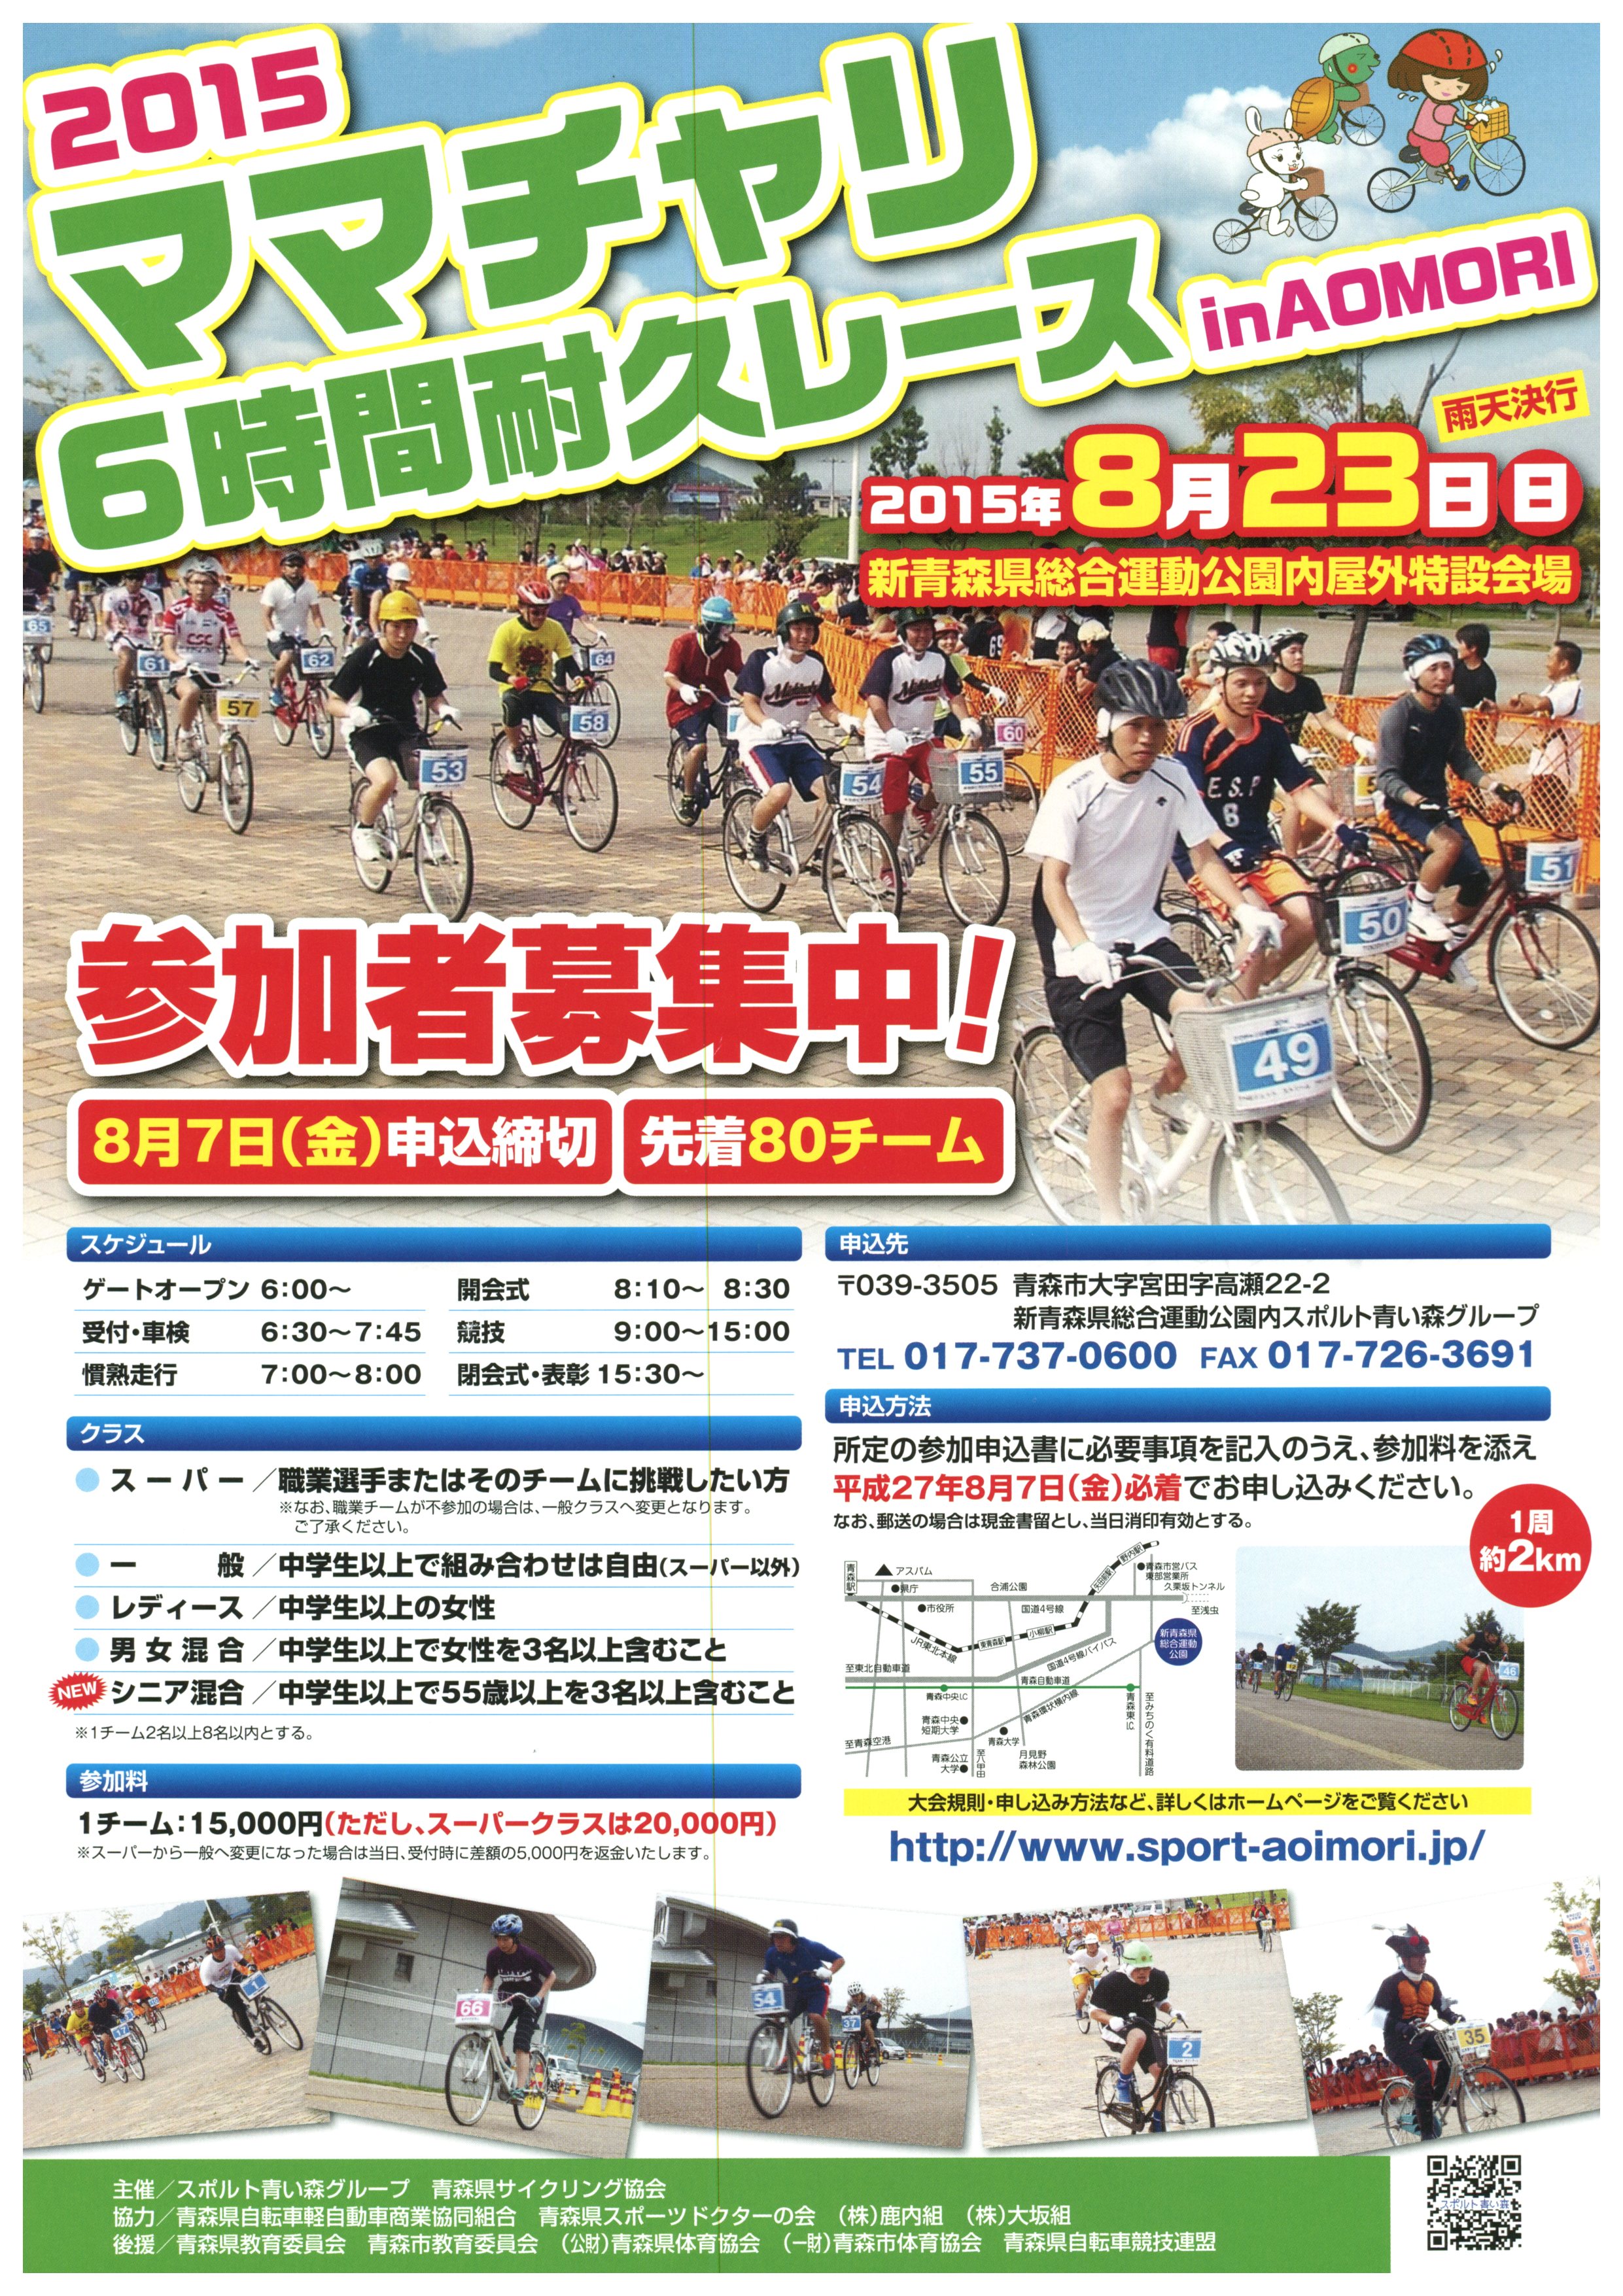 2015 ママチャリ6時間耐久レース in AOMORI